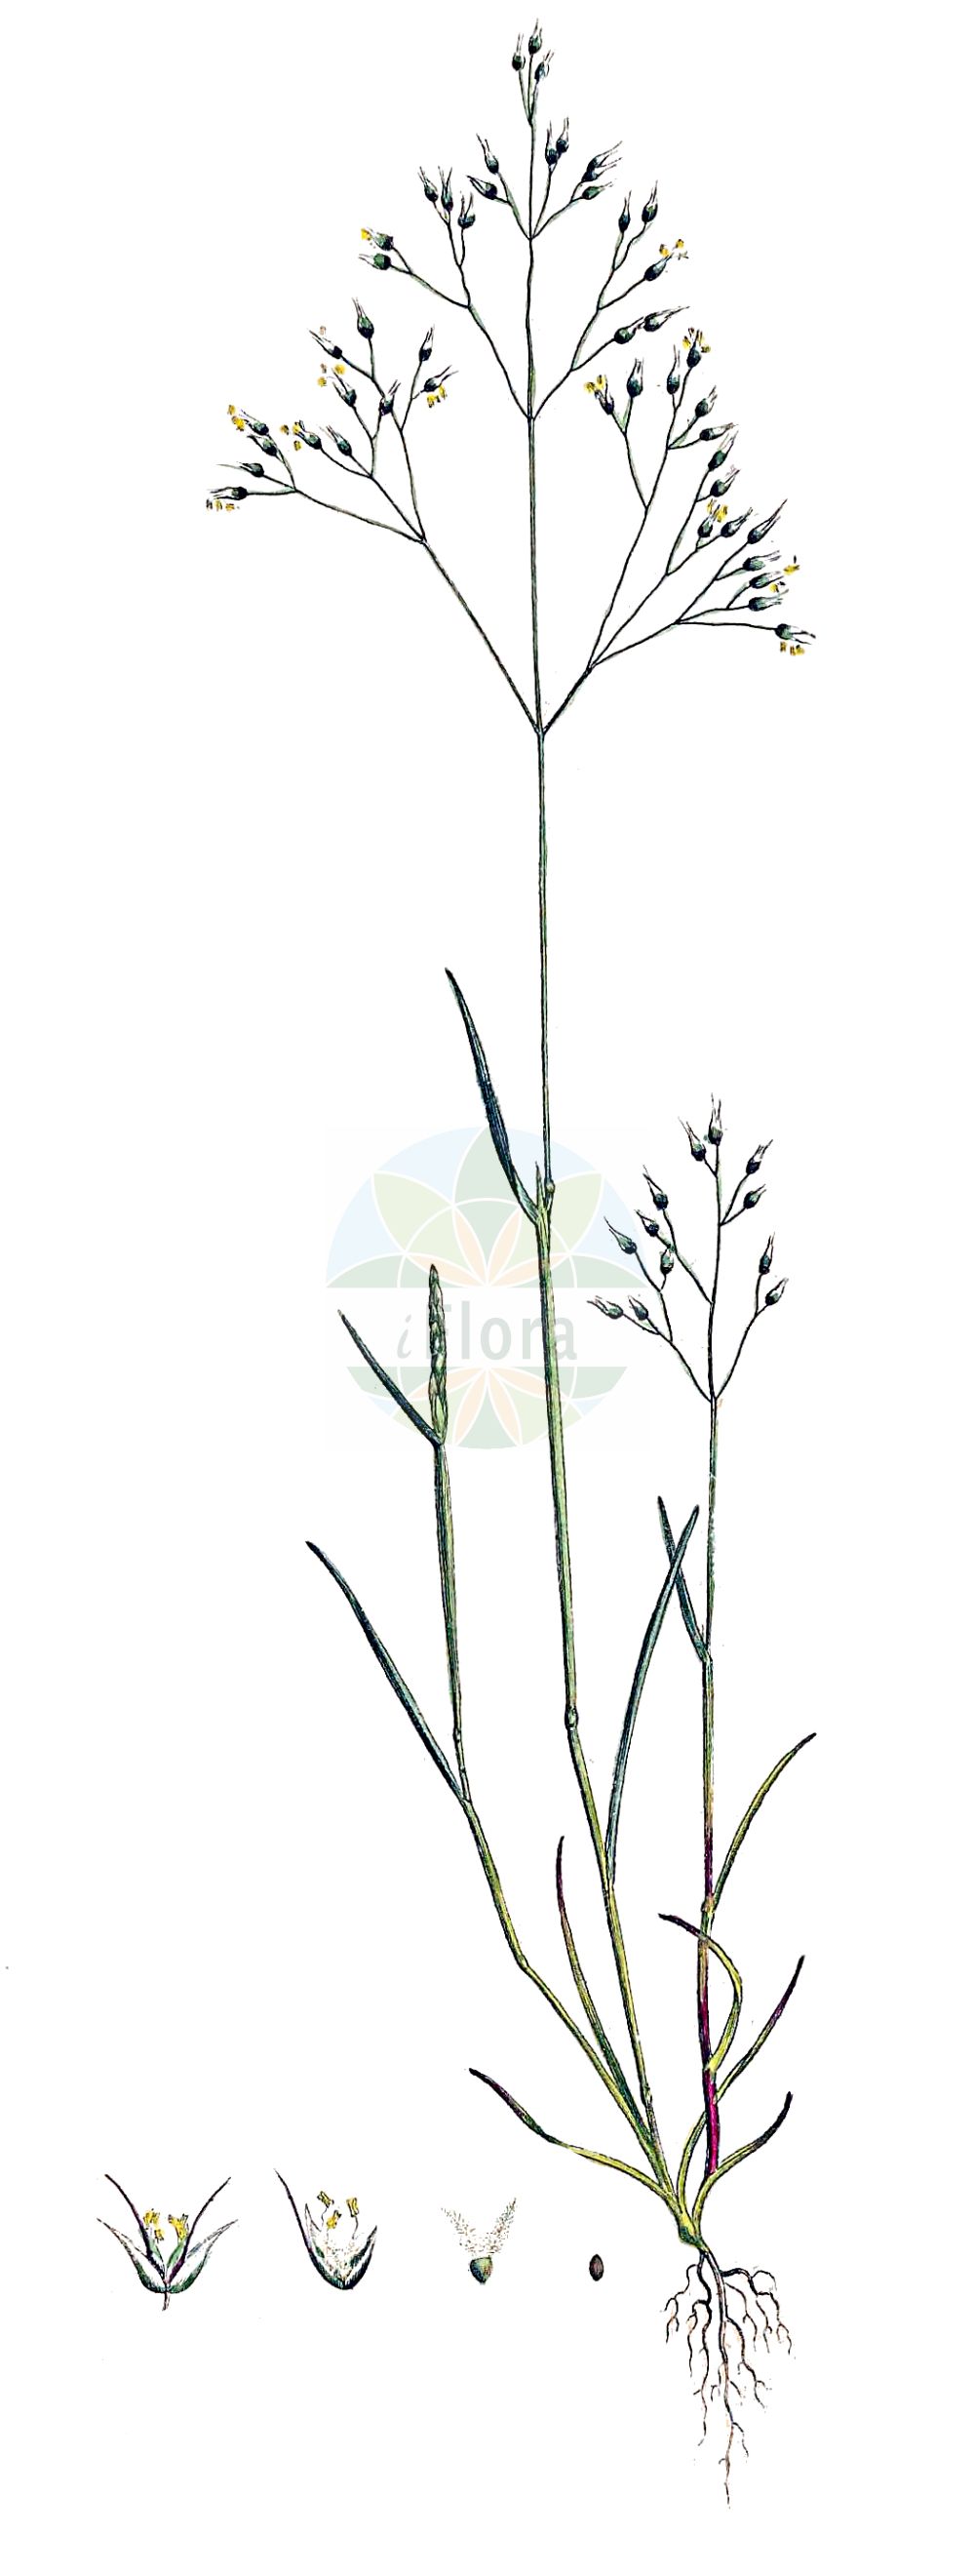 Historische Abbildung von Aira caryophyllea (Nelken-Haferschmiele - Silver Hair-grass). Das Bild zeigt Blatt, Bluete, Frucht und Same. ---- Historical Drawing of Aira caryophyllea (Nelken-Haferschmiele - Silver Hair-grass). The image is showing leaf, flower, fruit and seed.(Aira caryophyllea,Nelken-Haferschmiele,Silver Hair-grass,Aira caryophyllea,Aira mucronata,Avena caryophyllea,Nelken-Haferschmiele,Silver Hair-grass,Aira,Haferschmiele,Hair-grass,Poaceae,Süßgräser,Grass family,Blatt,Bluete,Frucht,Same,leaf,flower,fruit,seed,Curtis (1777-1798))